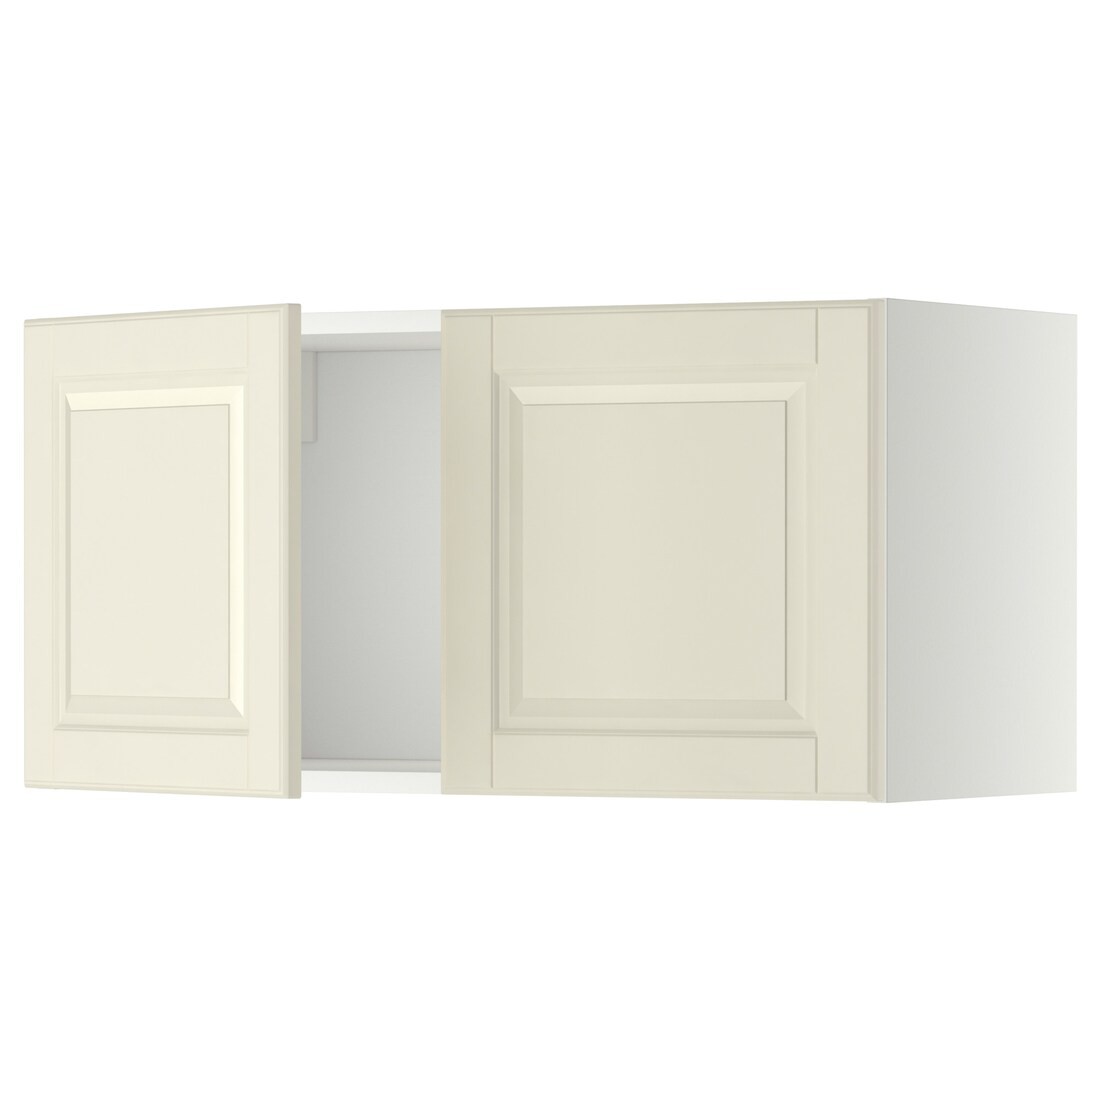 METOD МЕТОД Навесной шкаф с 2 дверями, белый / Bodbyn кремовый, 80x40 см